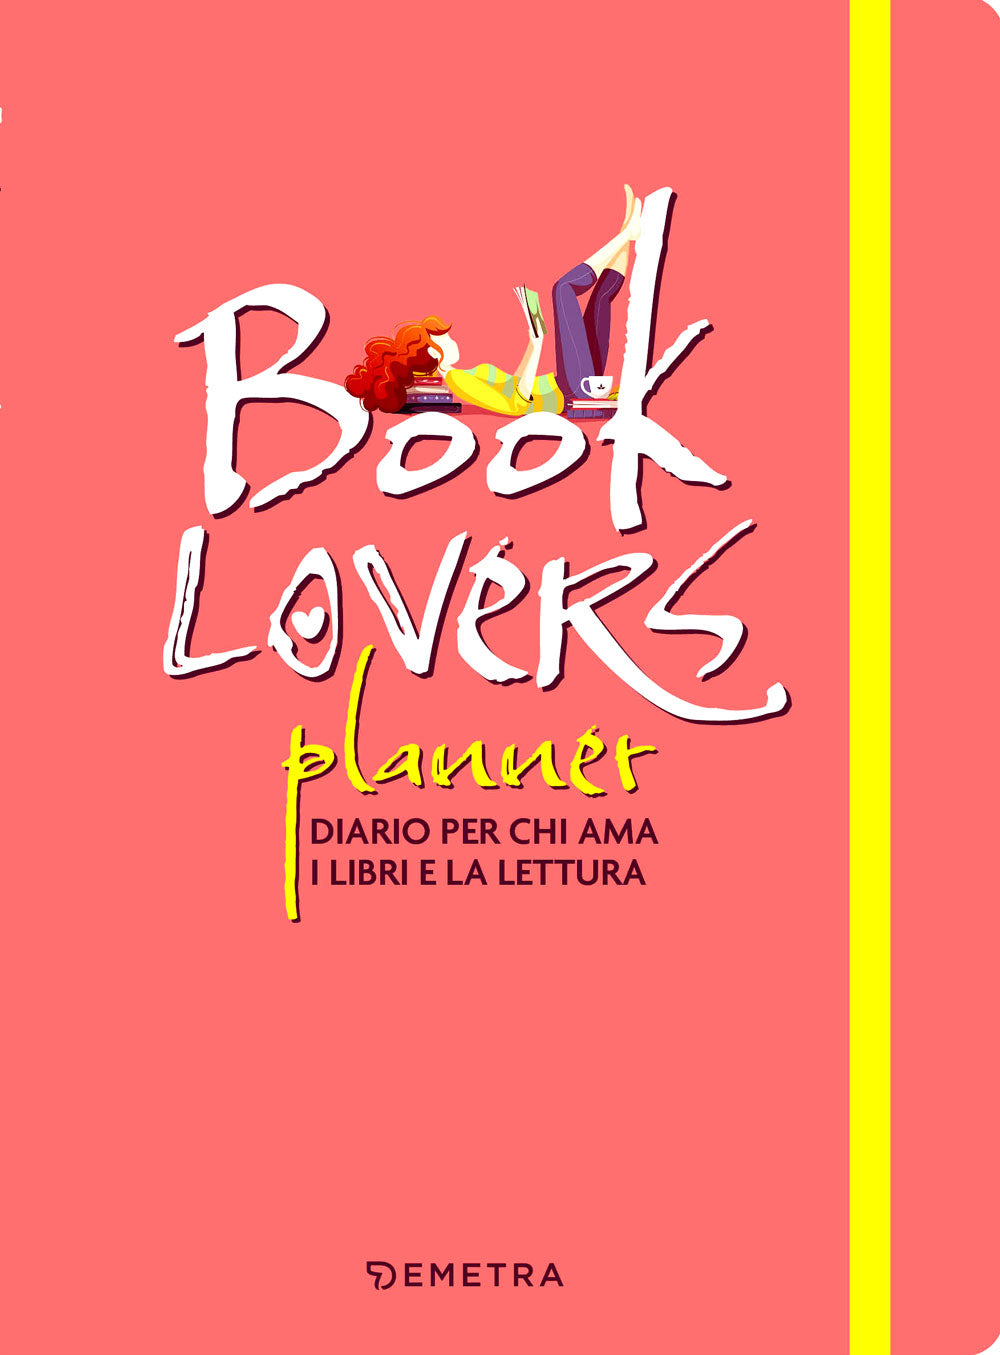 Booklovers Planner. Diario per chi ama i libri e la lettura